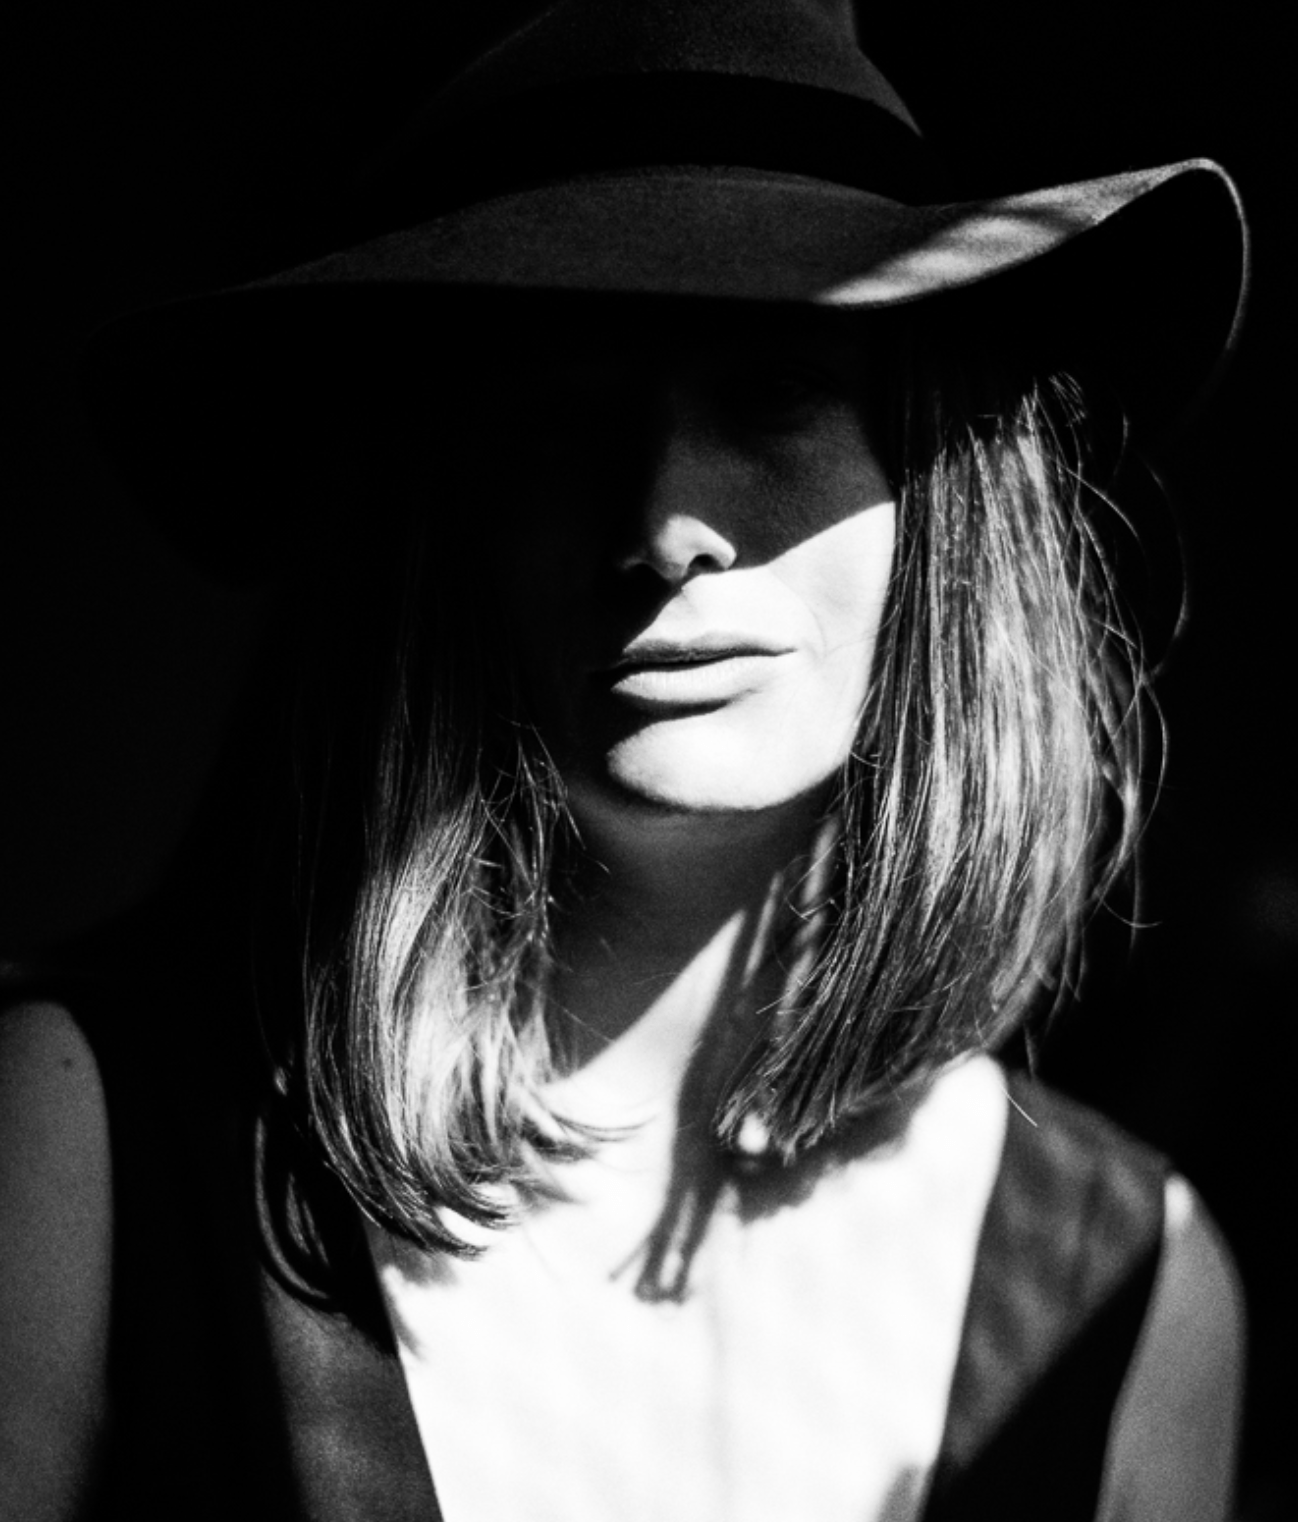 Black and white portrait of singer songwriter Lauren Minear.